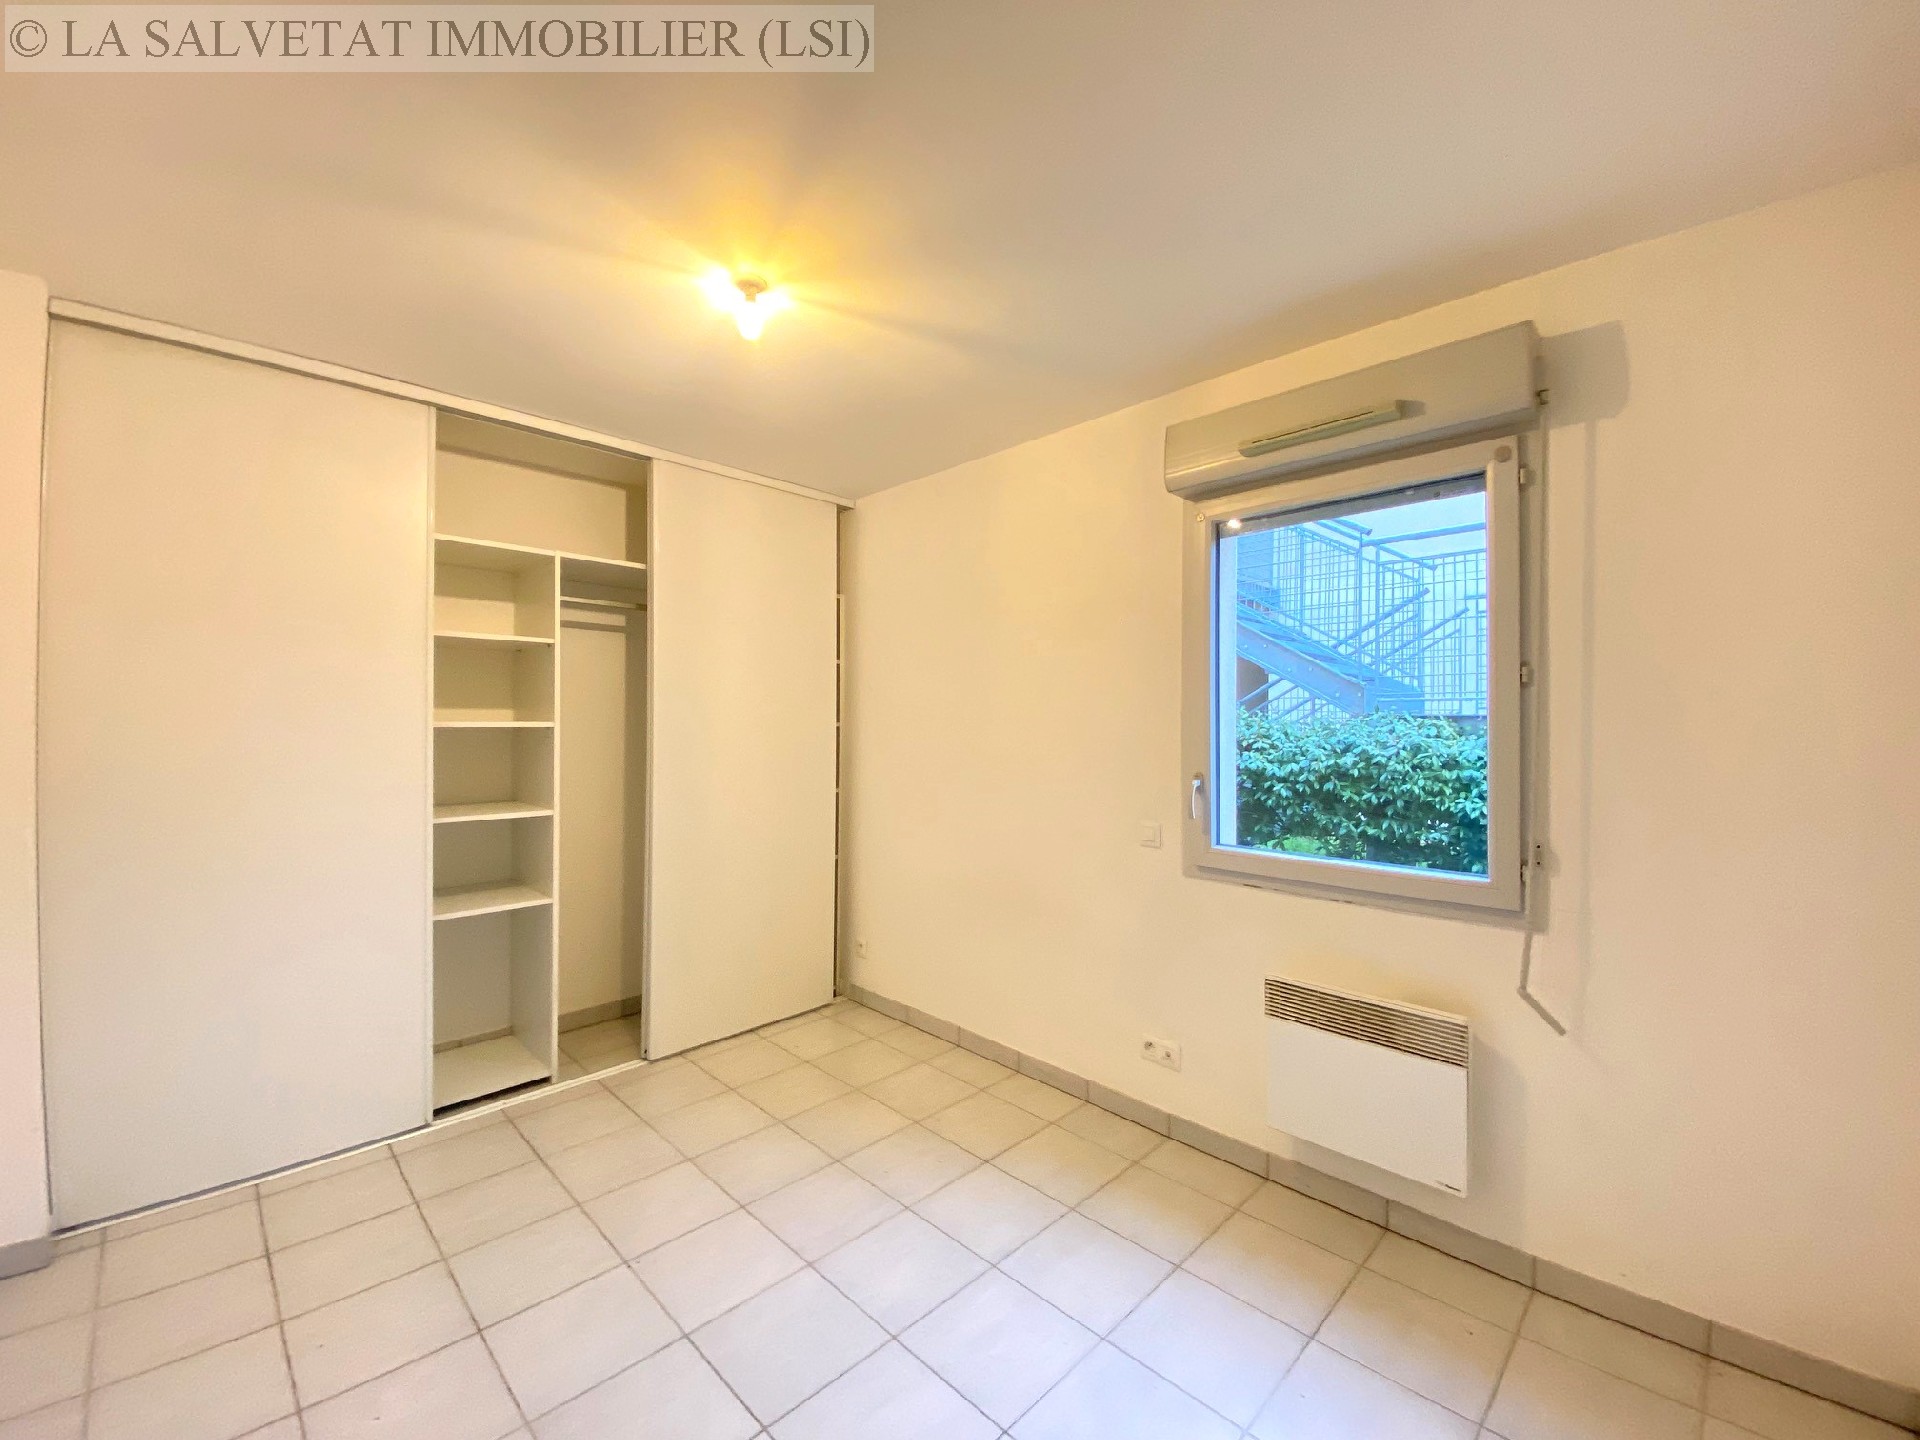 Vente appartement - LA SALVETAT ST GILLES<br>42 m², 2 pièces